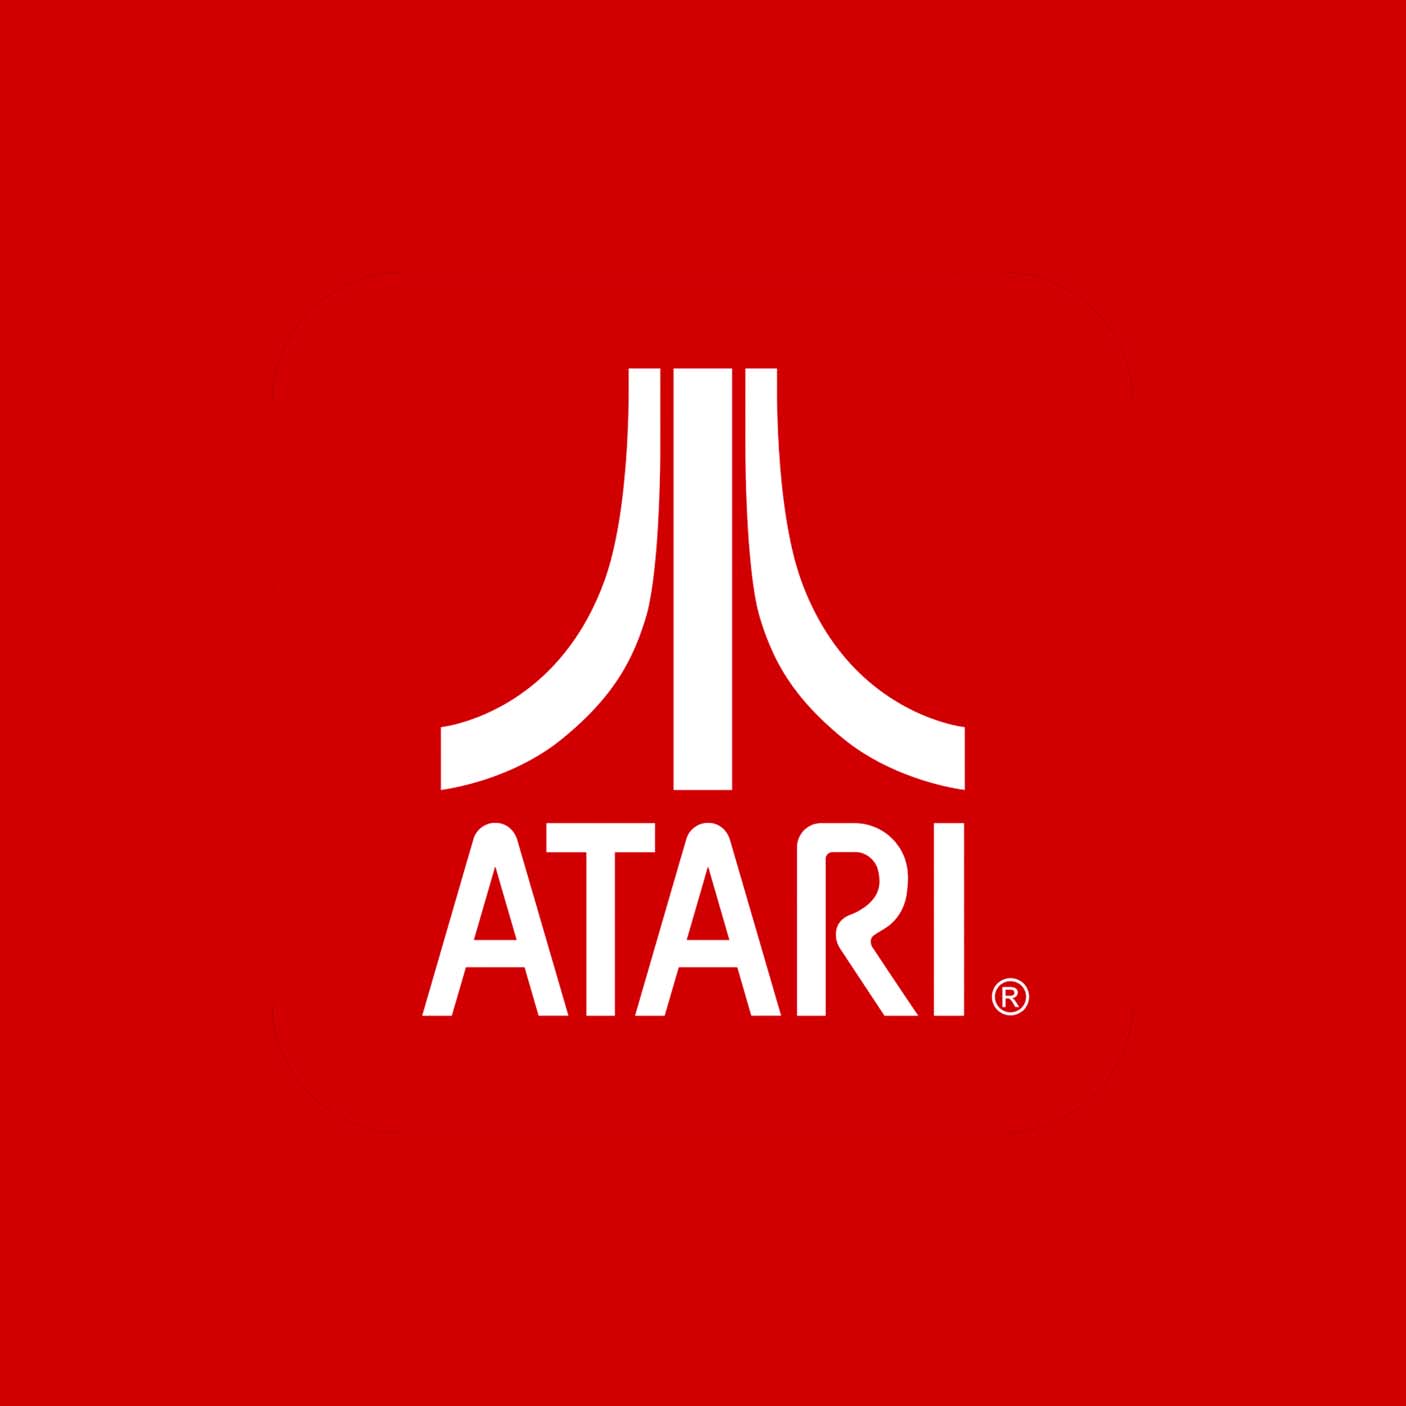 Atari 2600 Cases